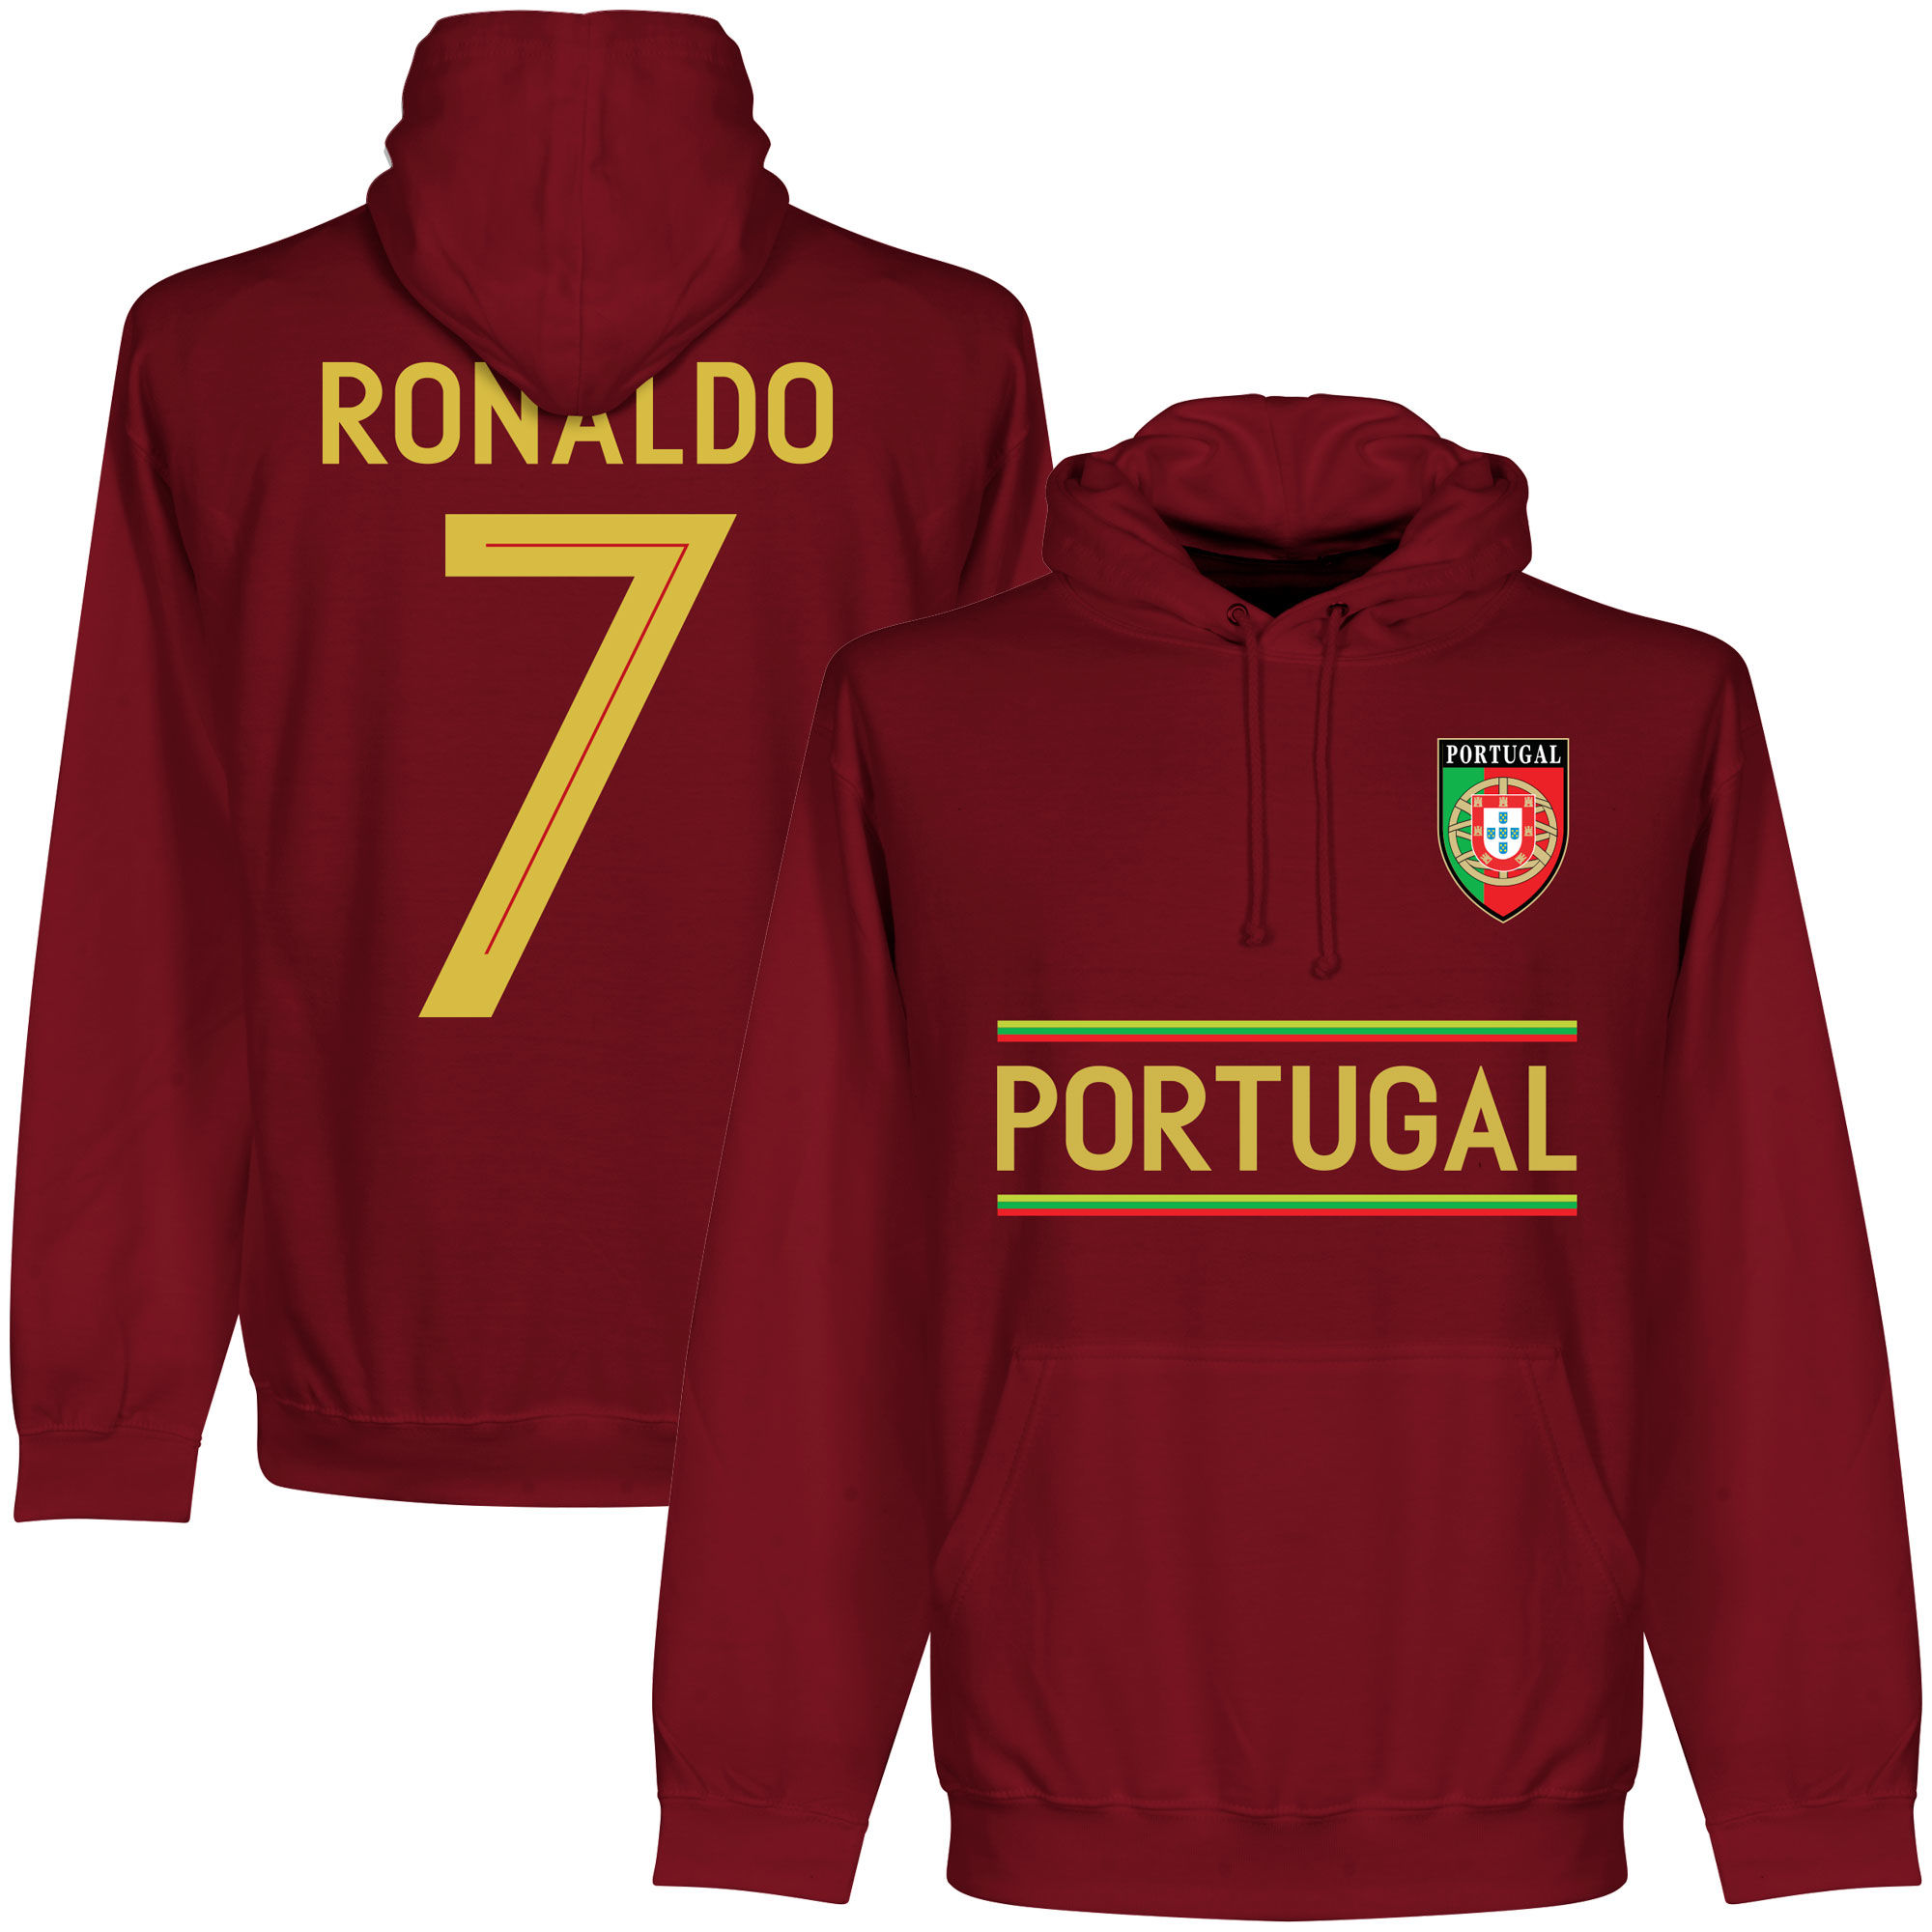 Portugalsko - Mikina s kapucí - vínová, Ronaldo